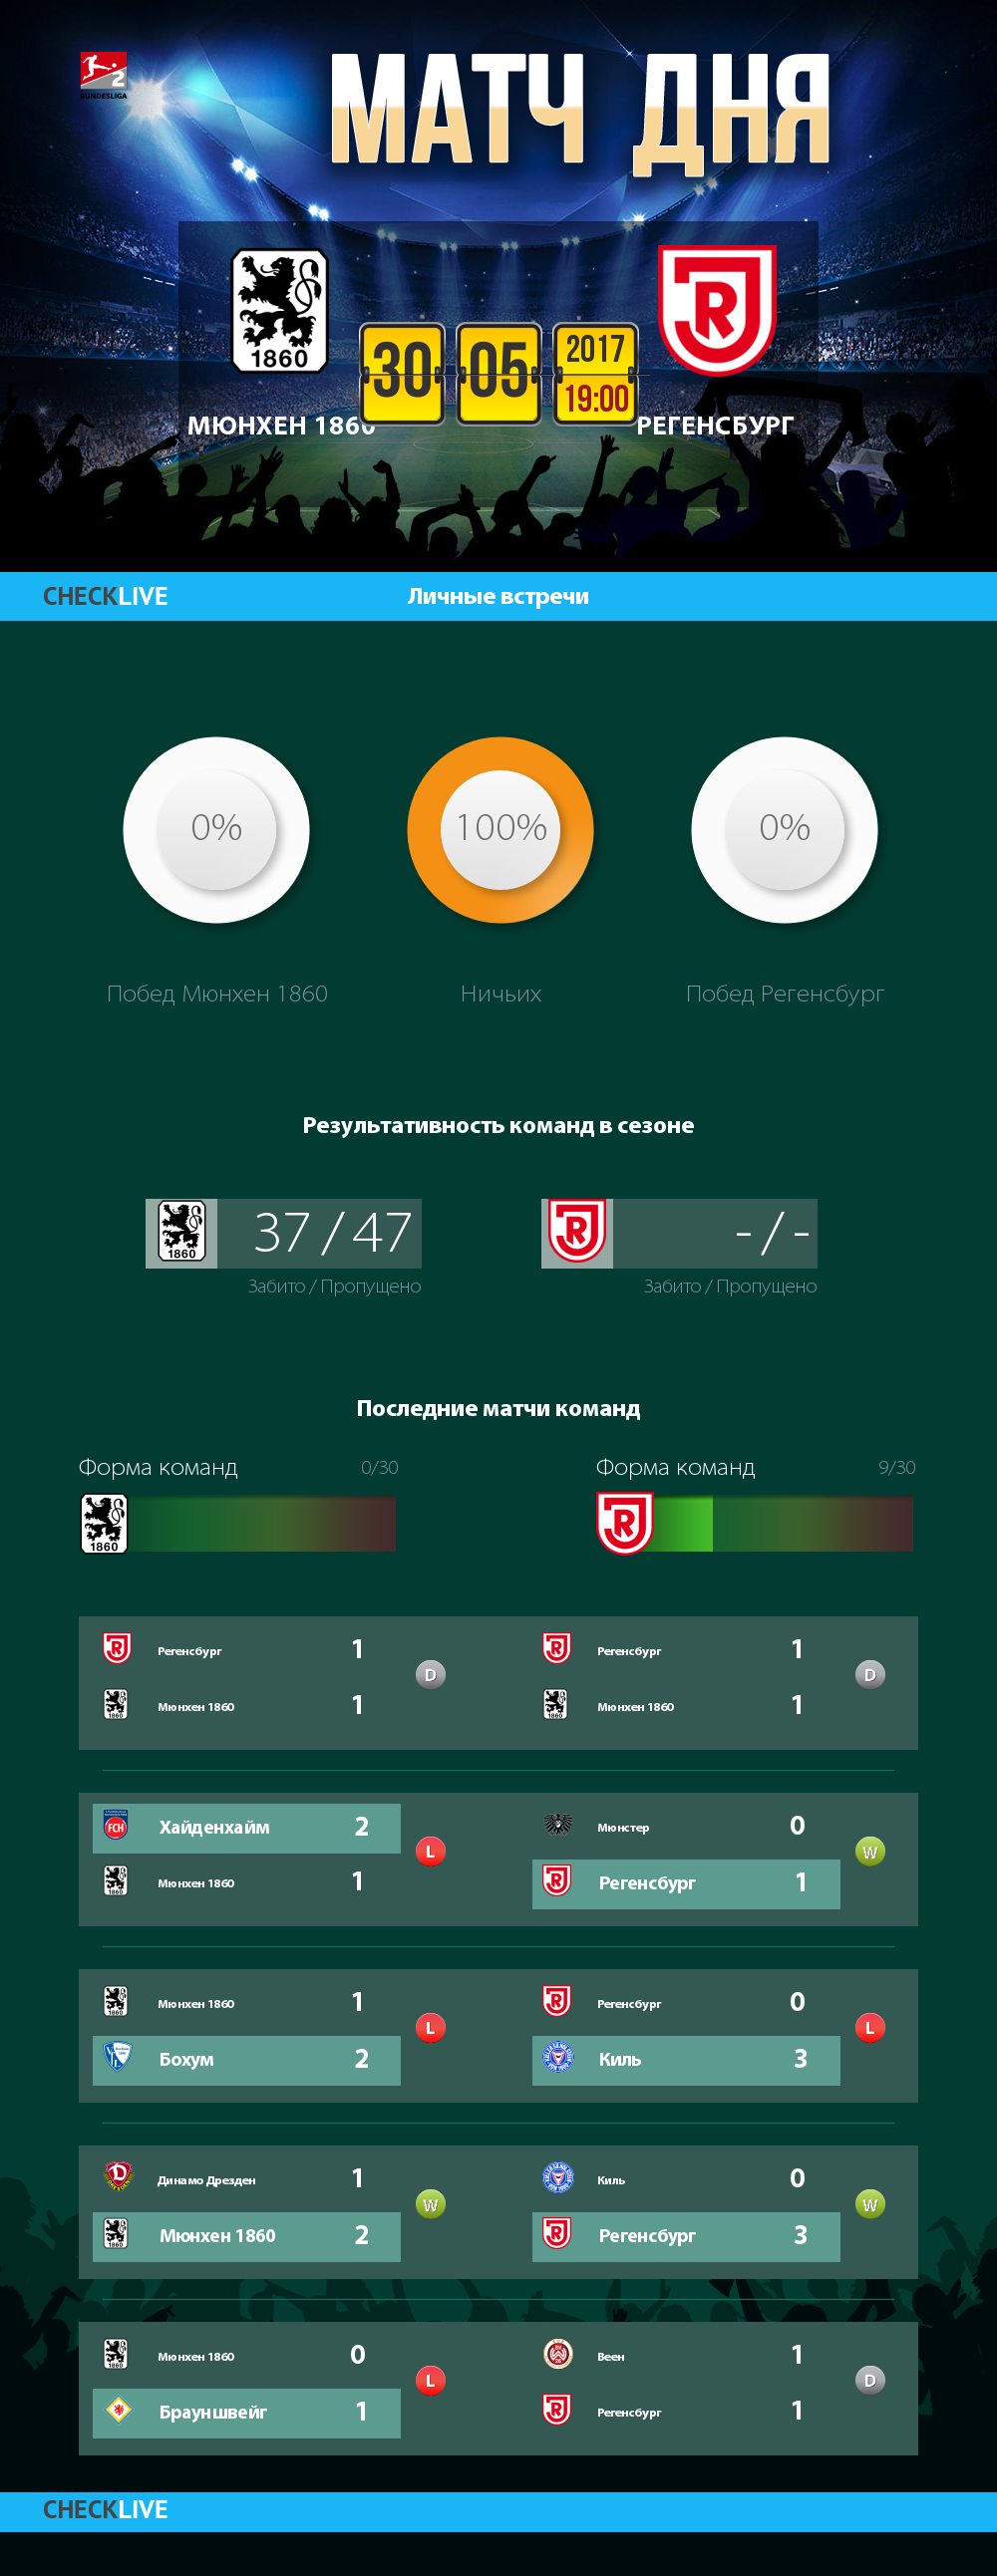 Инфографика Мюнхен 1860 и Регенсбург матч дня 30.05.2017